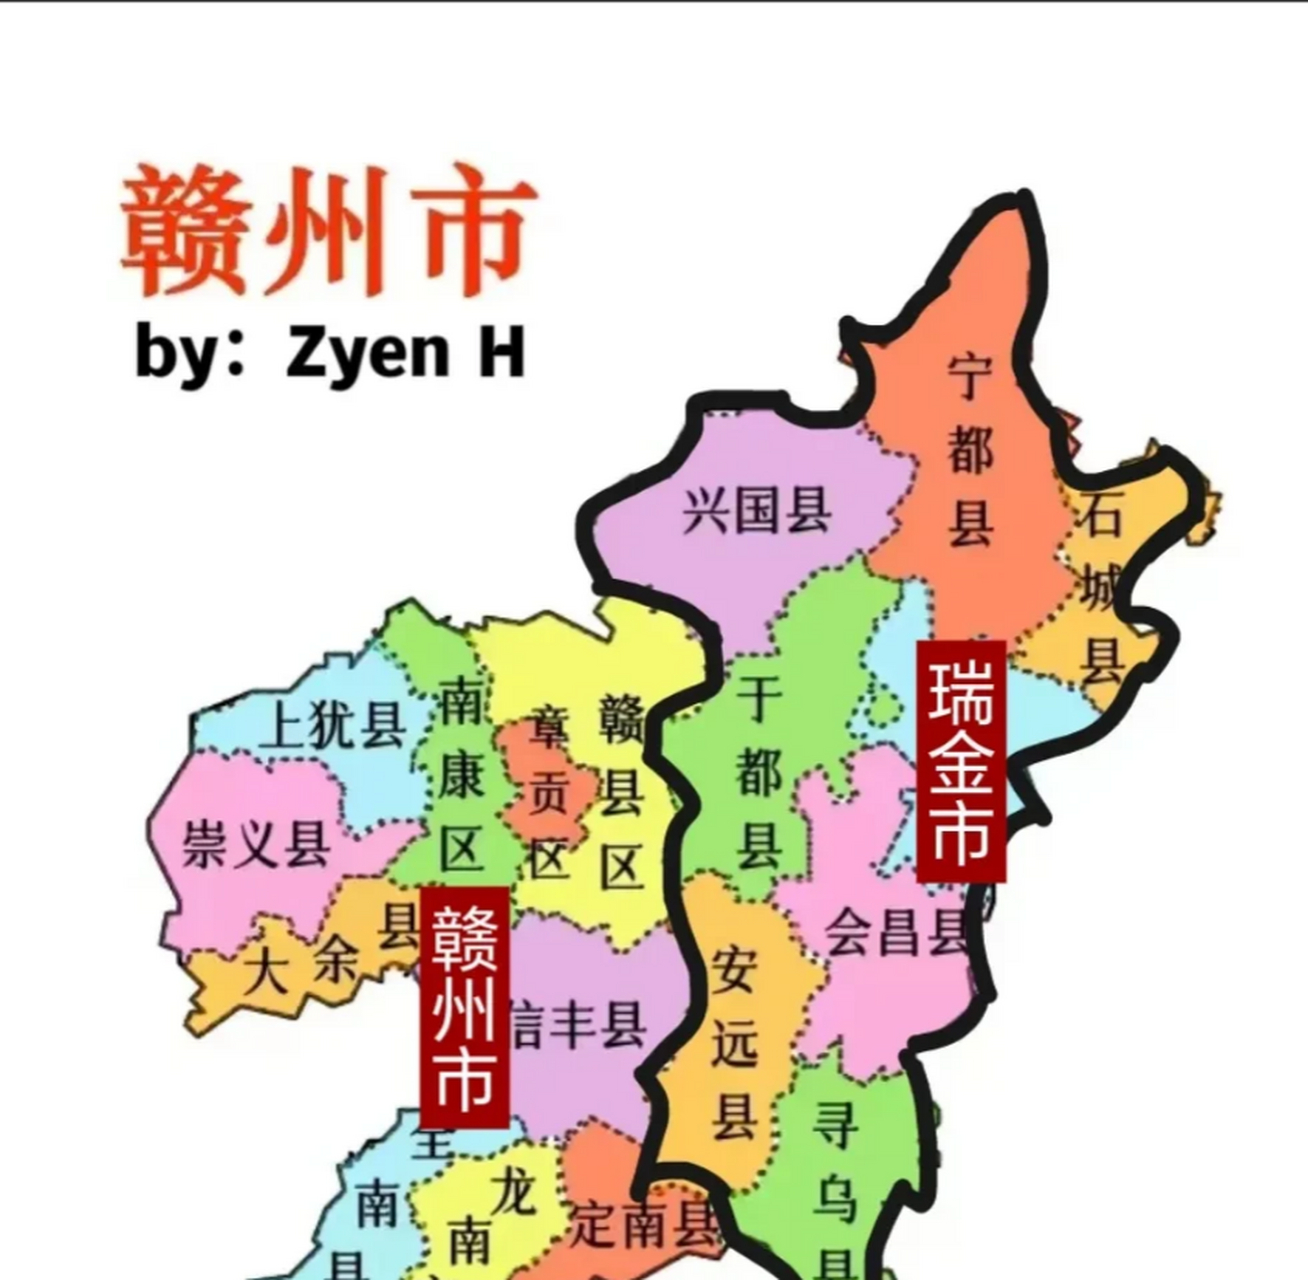 分成两个城市:建议南康区以东的三县,以及信丰县以南的四县跟着赣州